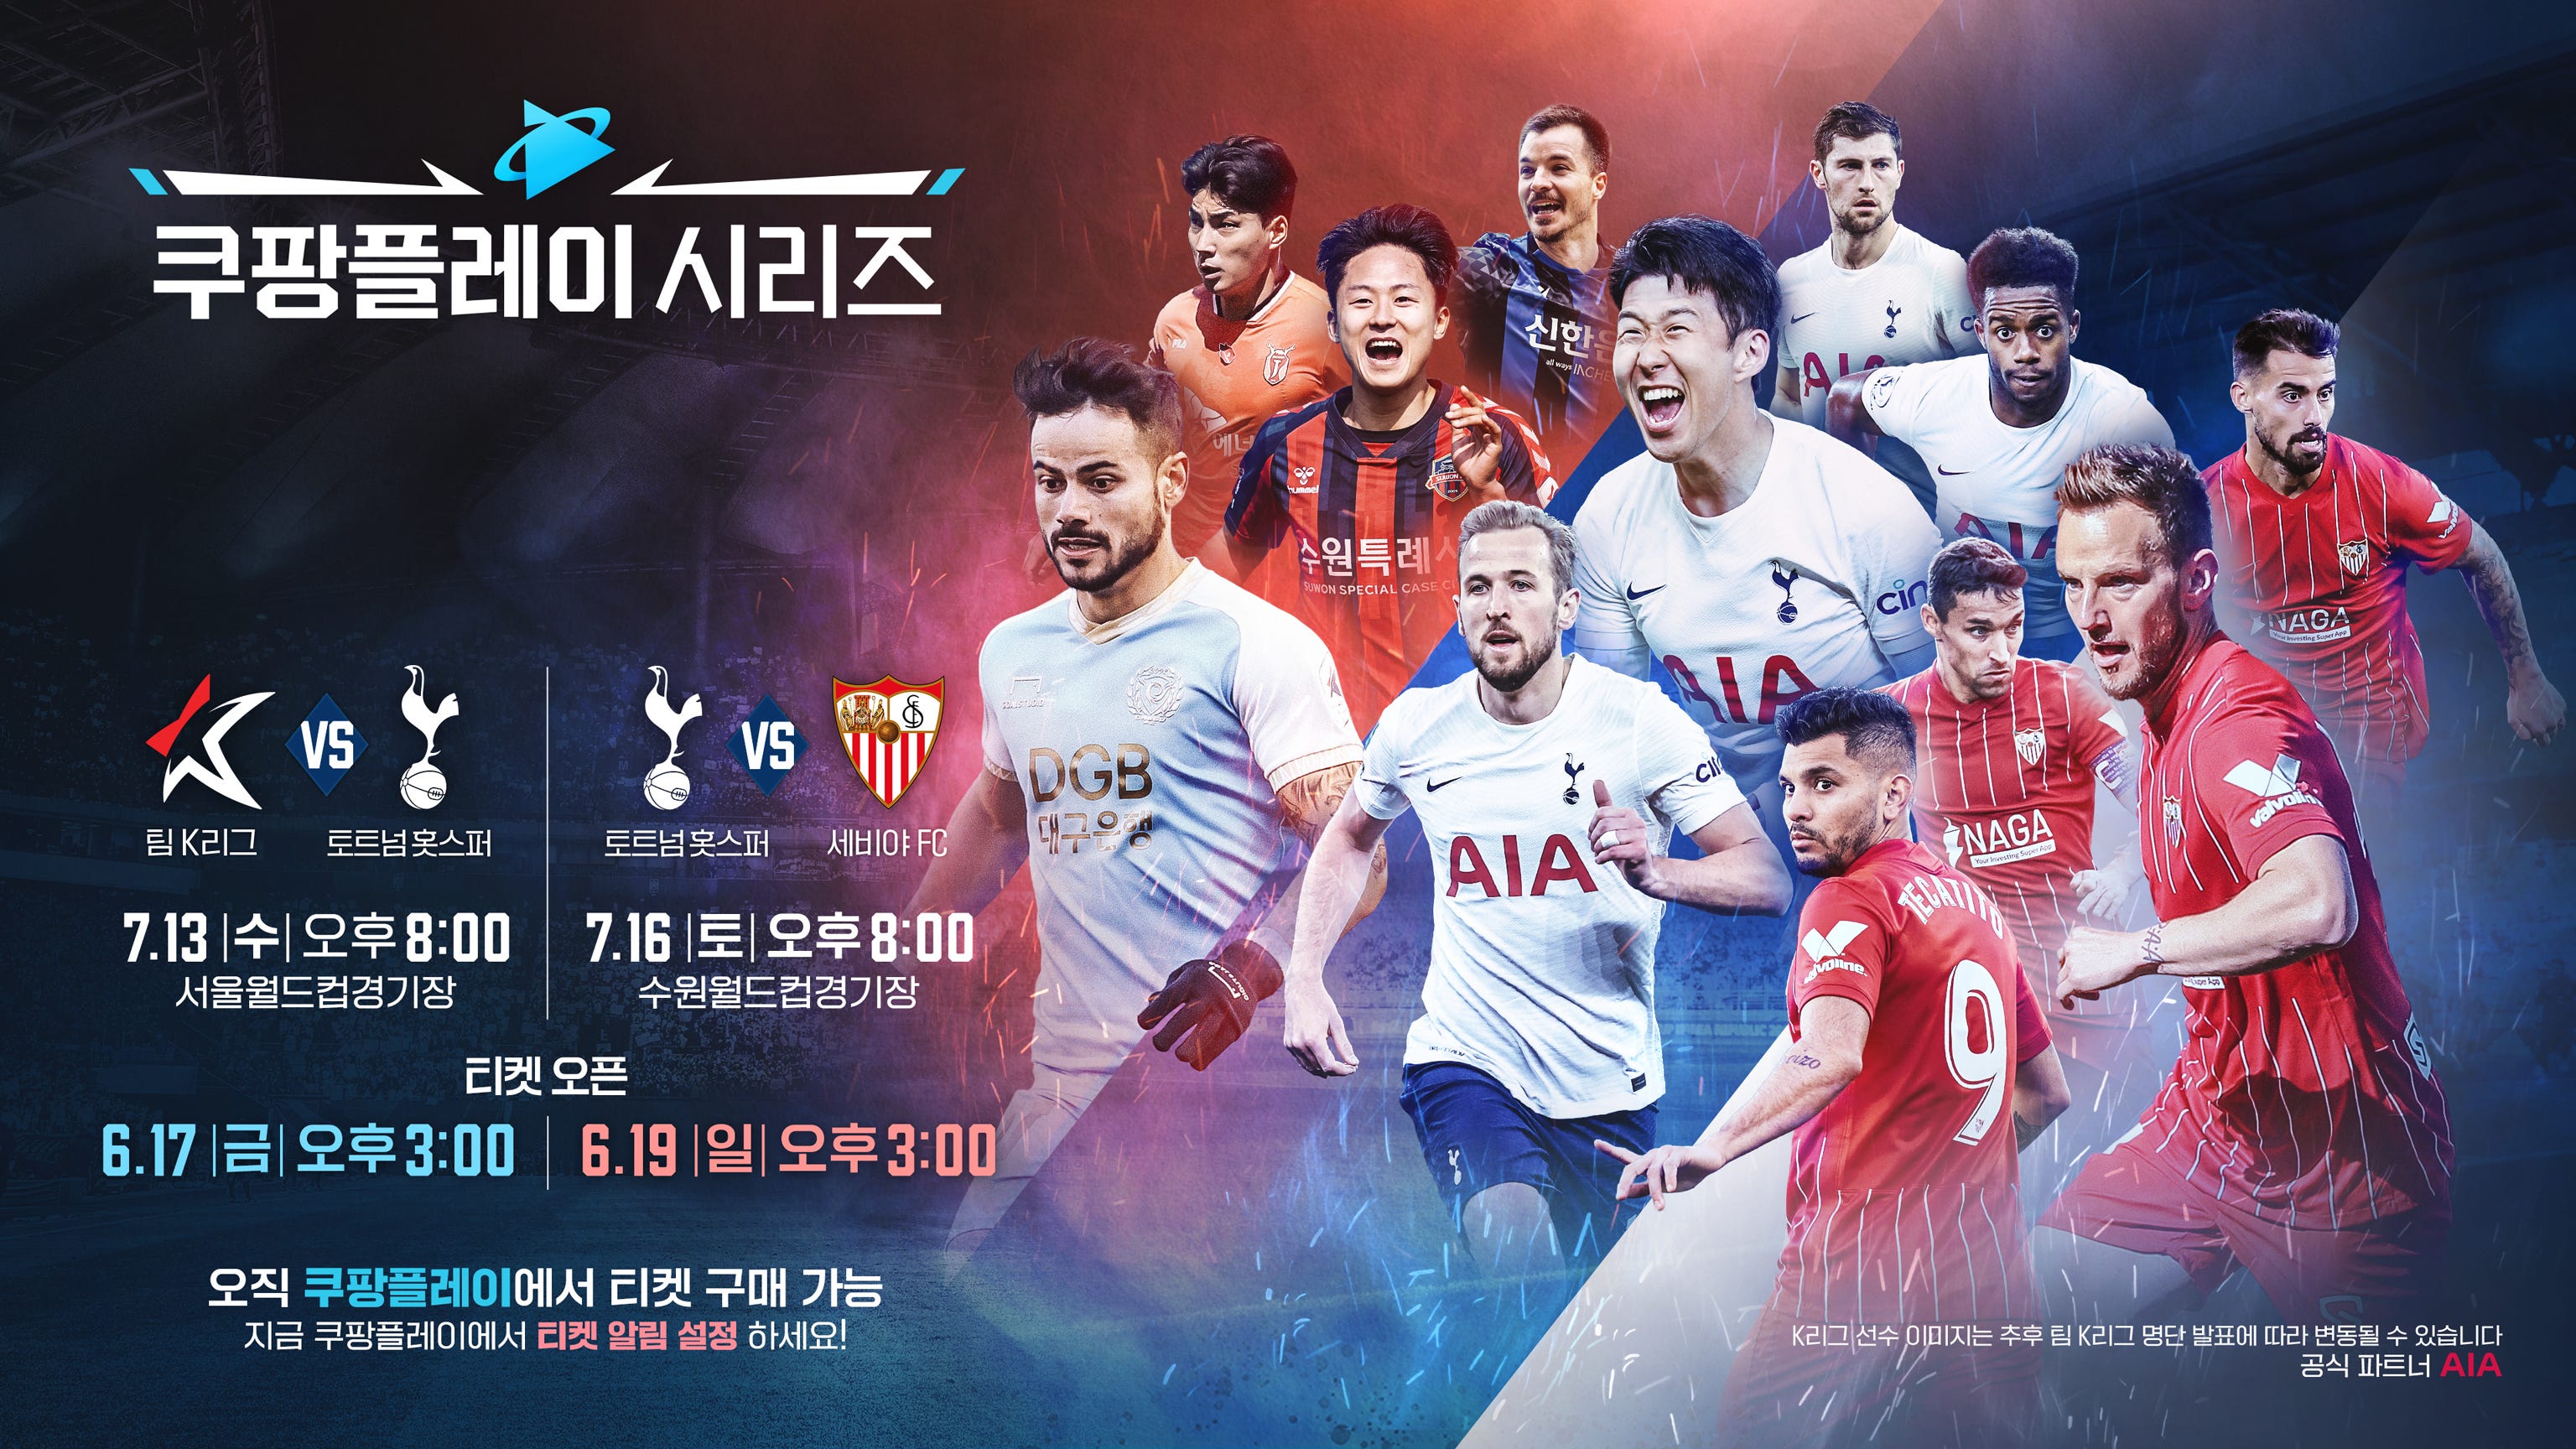 토트넘 vs 팀 K리그 티켓 판매 안정적 서버 운영 속 25분 만에 '완판' | Goal.com 한국어